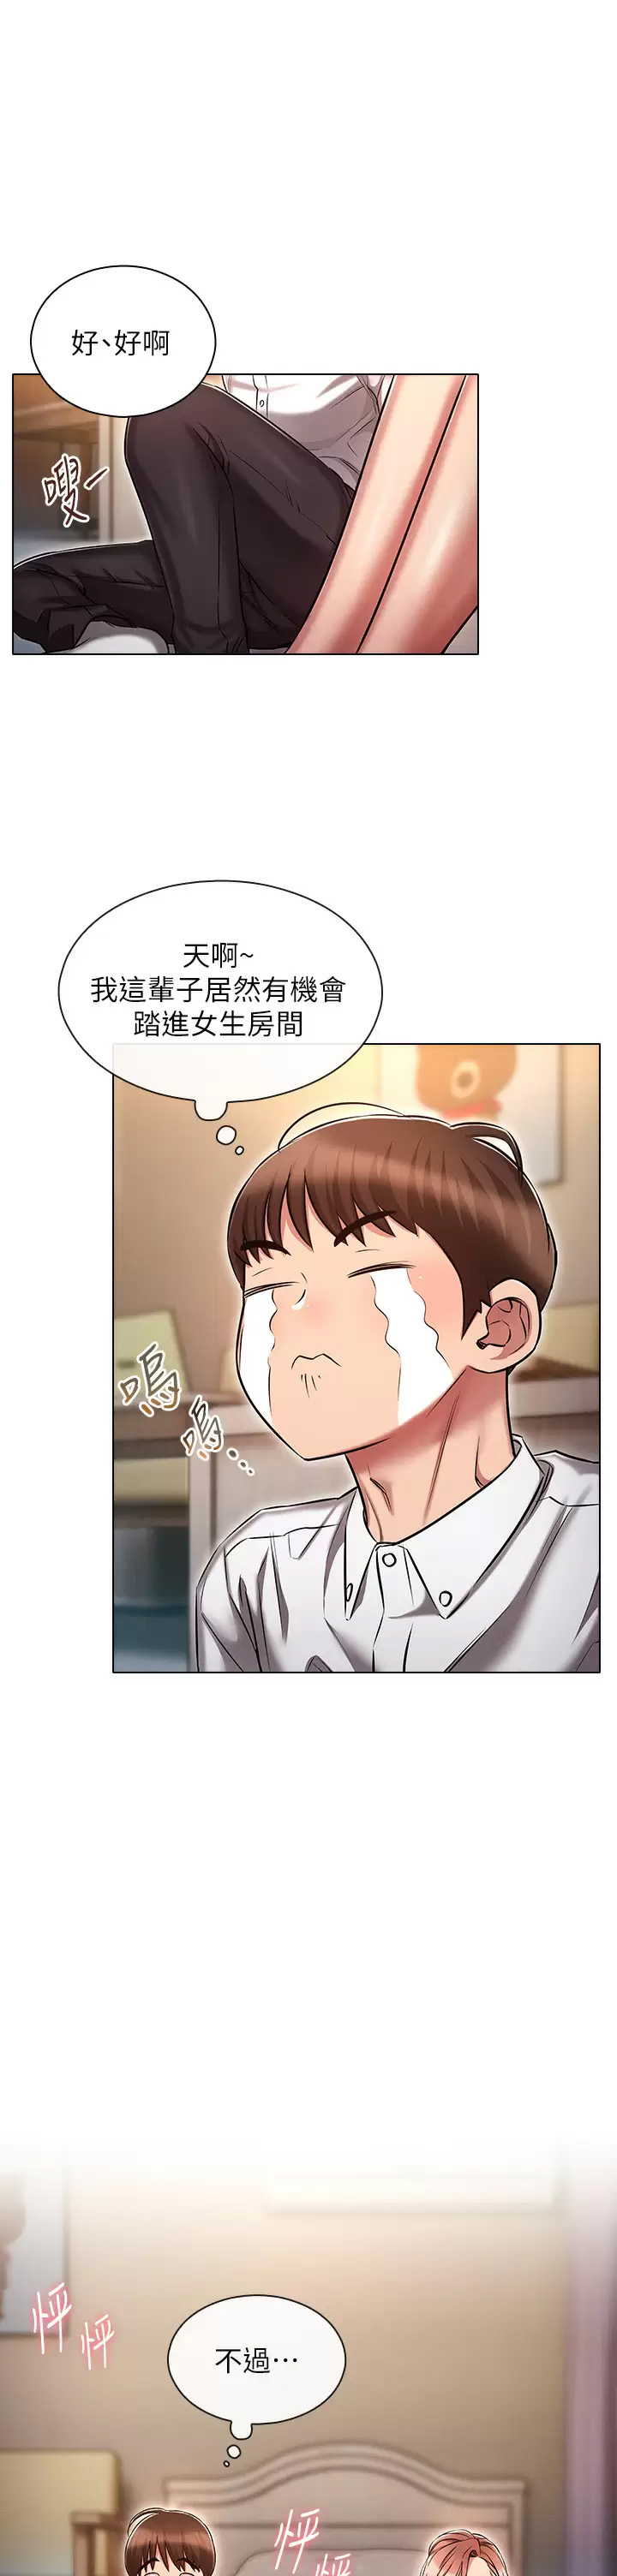 韩国污漫画 魯蛇的多重宇宙 第13话 满溢的暧昧情欲 17